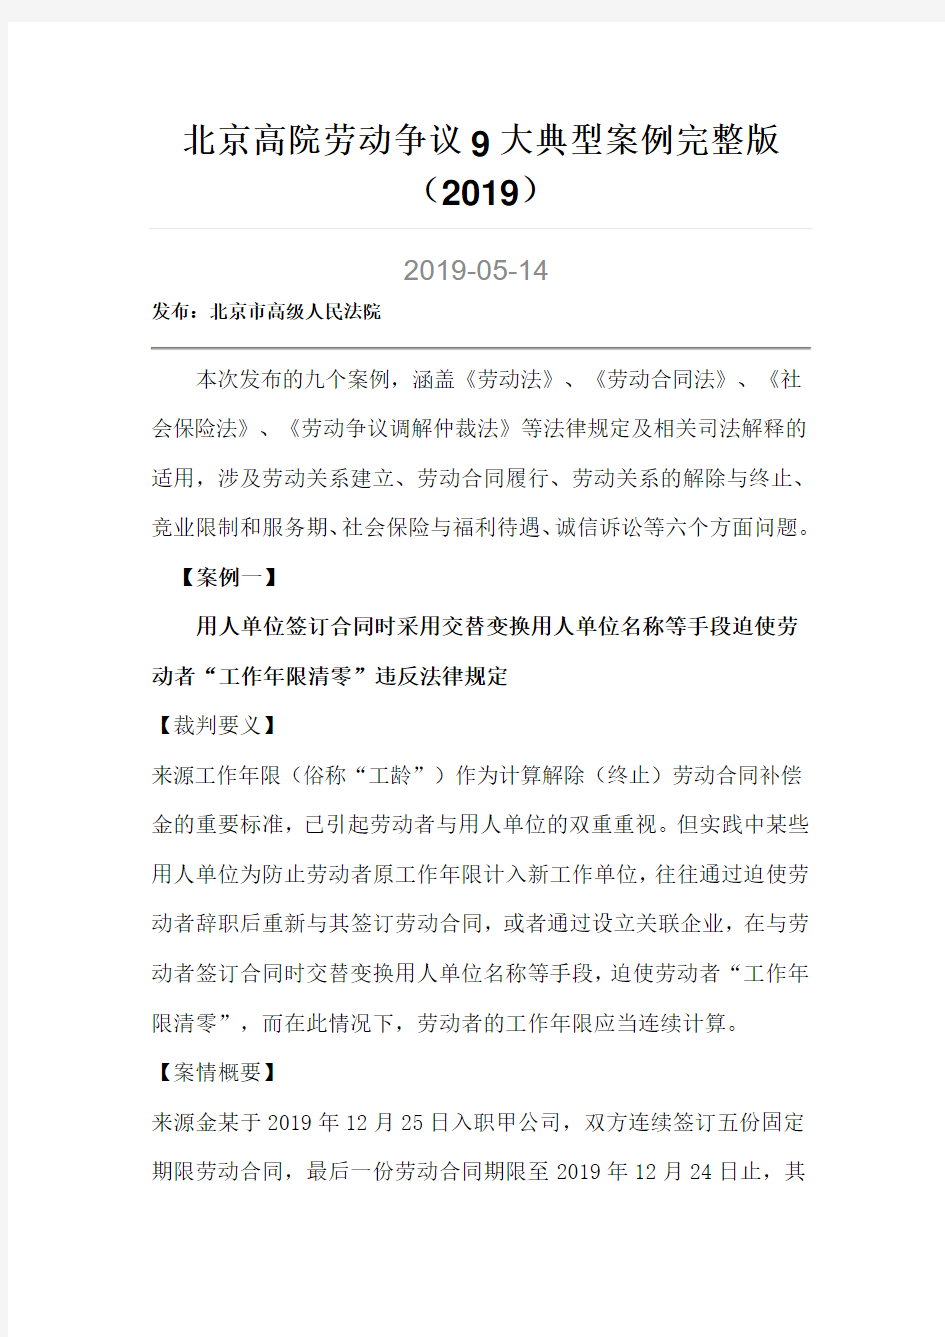 北京高院劳动争议9大典型案例完整版.-共20页